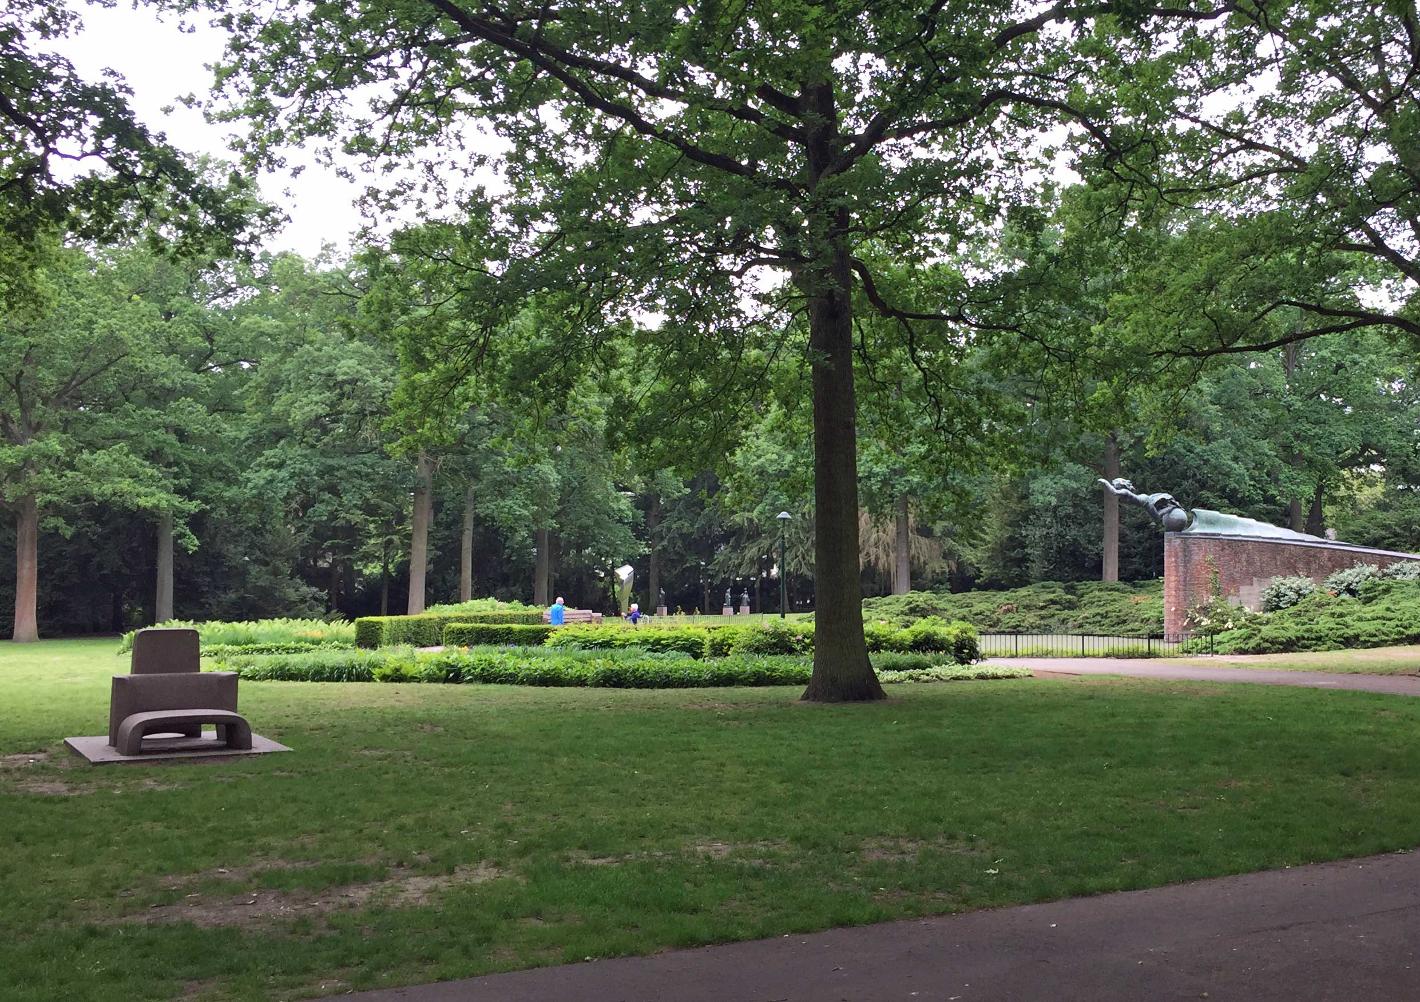 Foto Stadswandelpark in Eindhoven, Aussicht, Sehenswürdigkeiten & wahrzeichen, Nachbarschaft, platz, park - #1